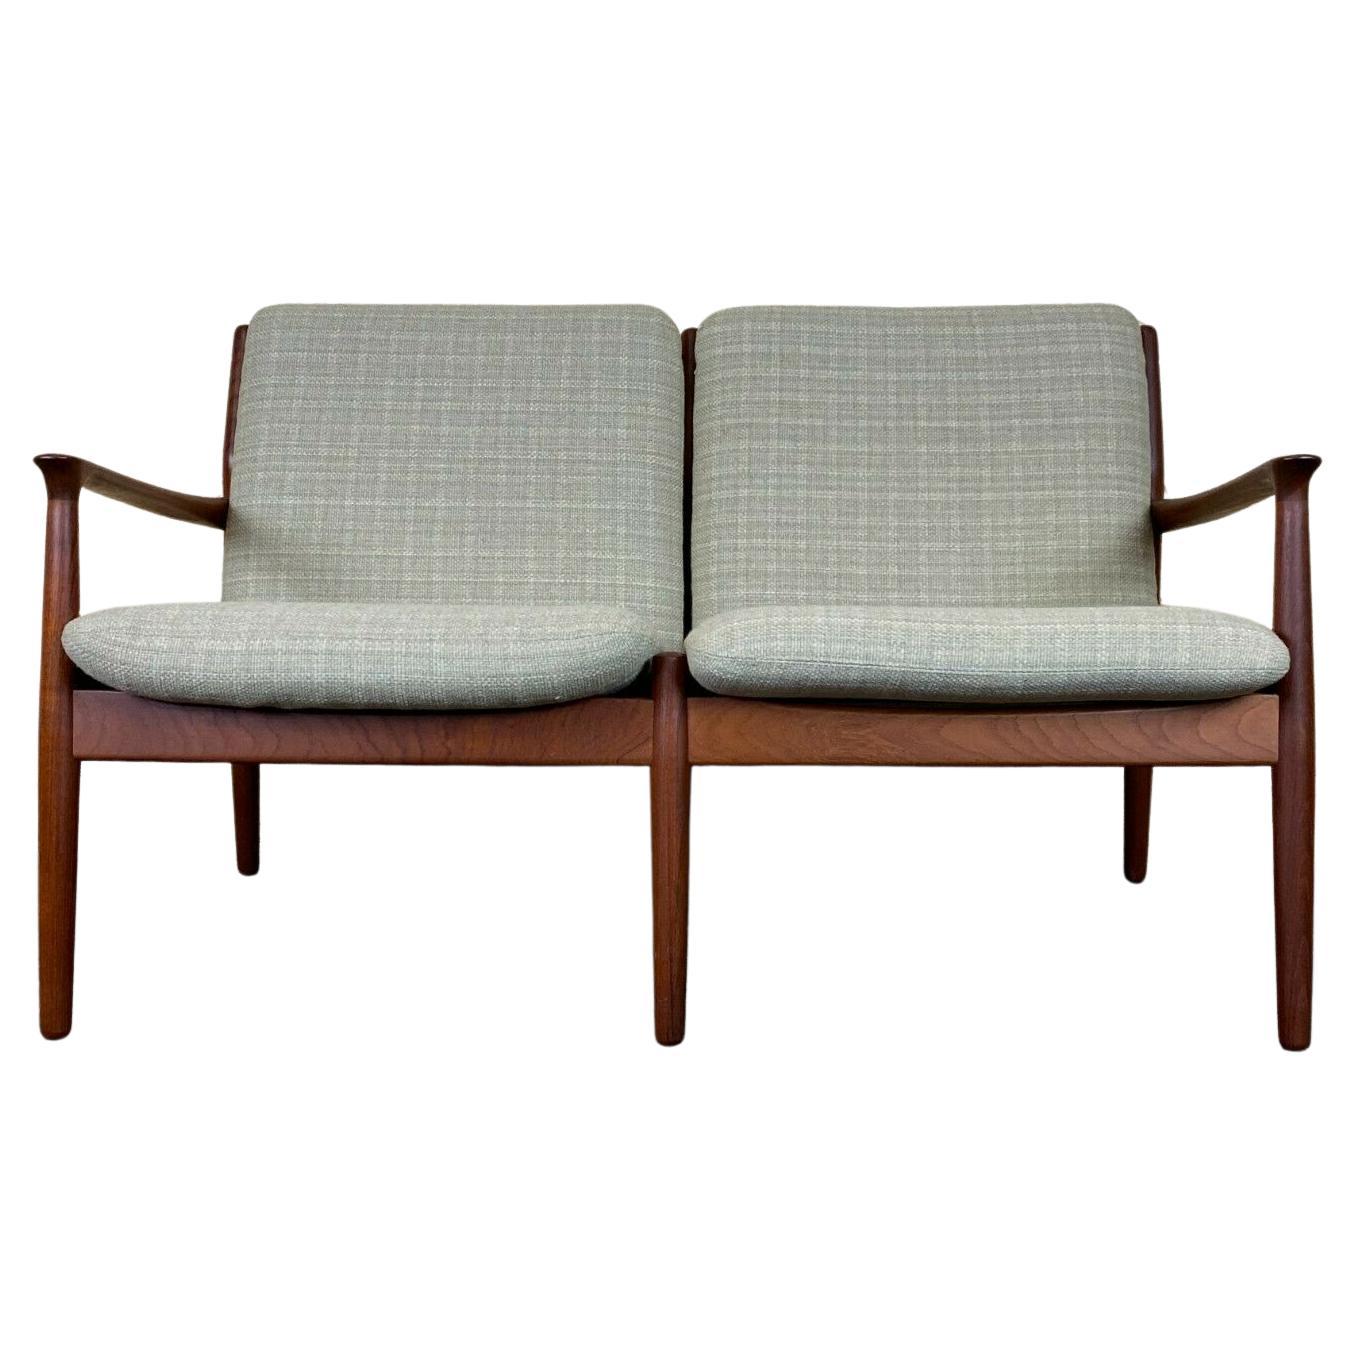 60er 70er Jahre Teakholz Sofa Couch 2er Svend Aage Eriksen für Glostrup Dänisches Design